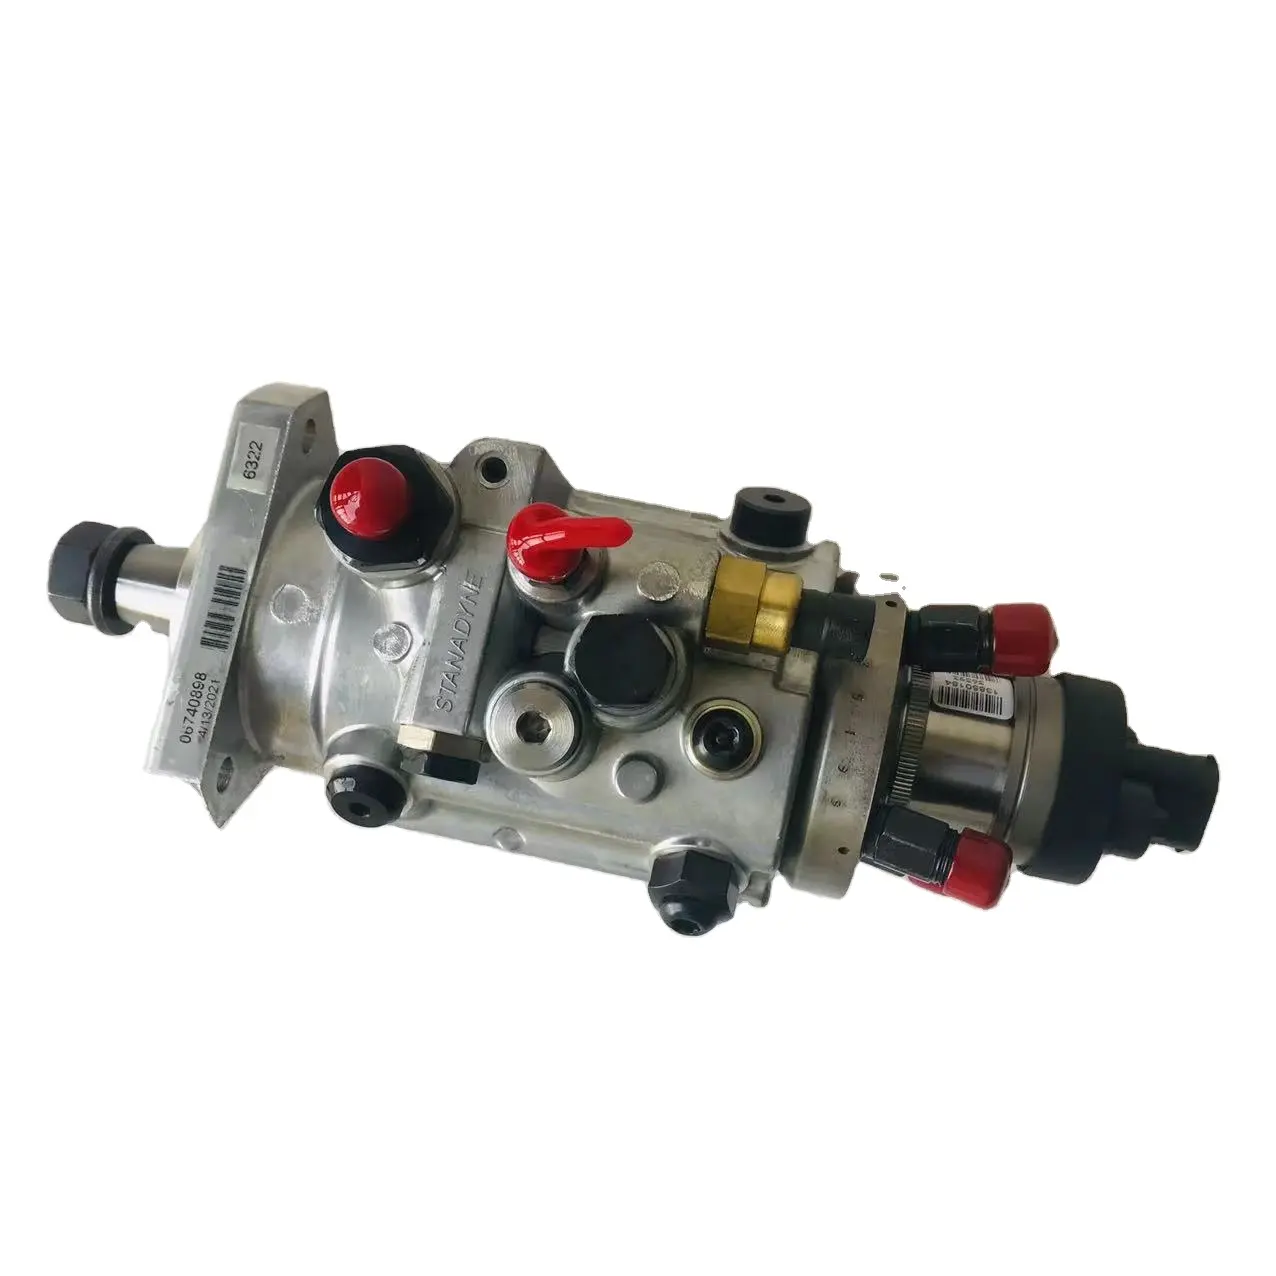 Pompa Injeksi Bahan Bakar RE568070 RE518166 Cocok untuk Mesin Diesel 4045 4,5l